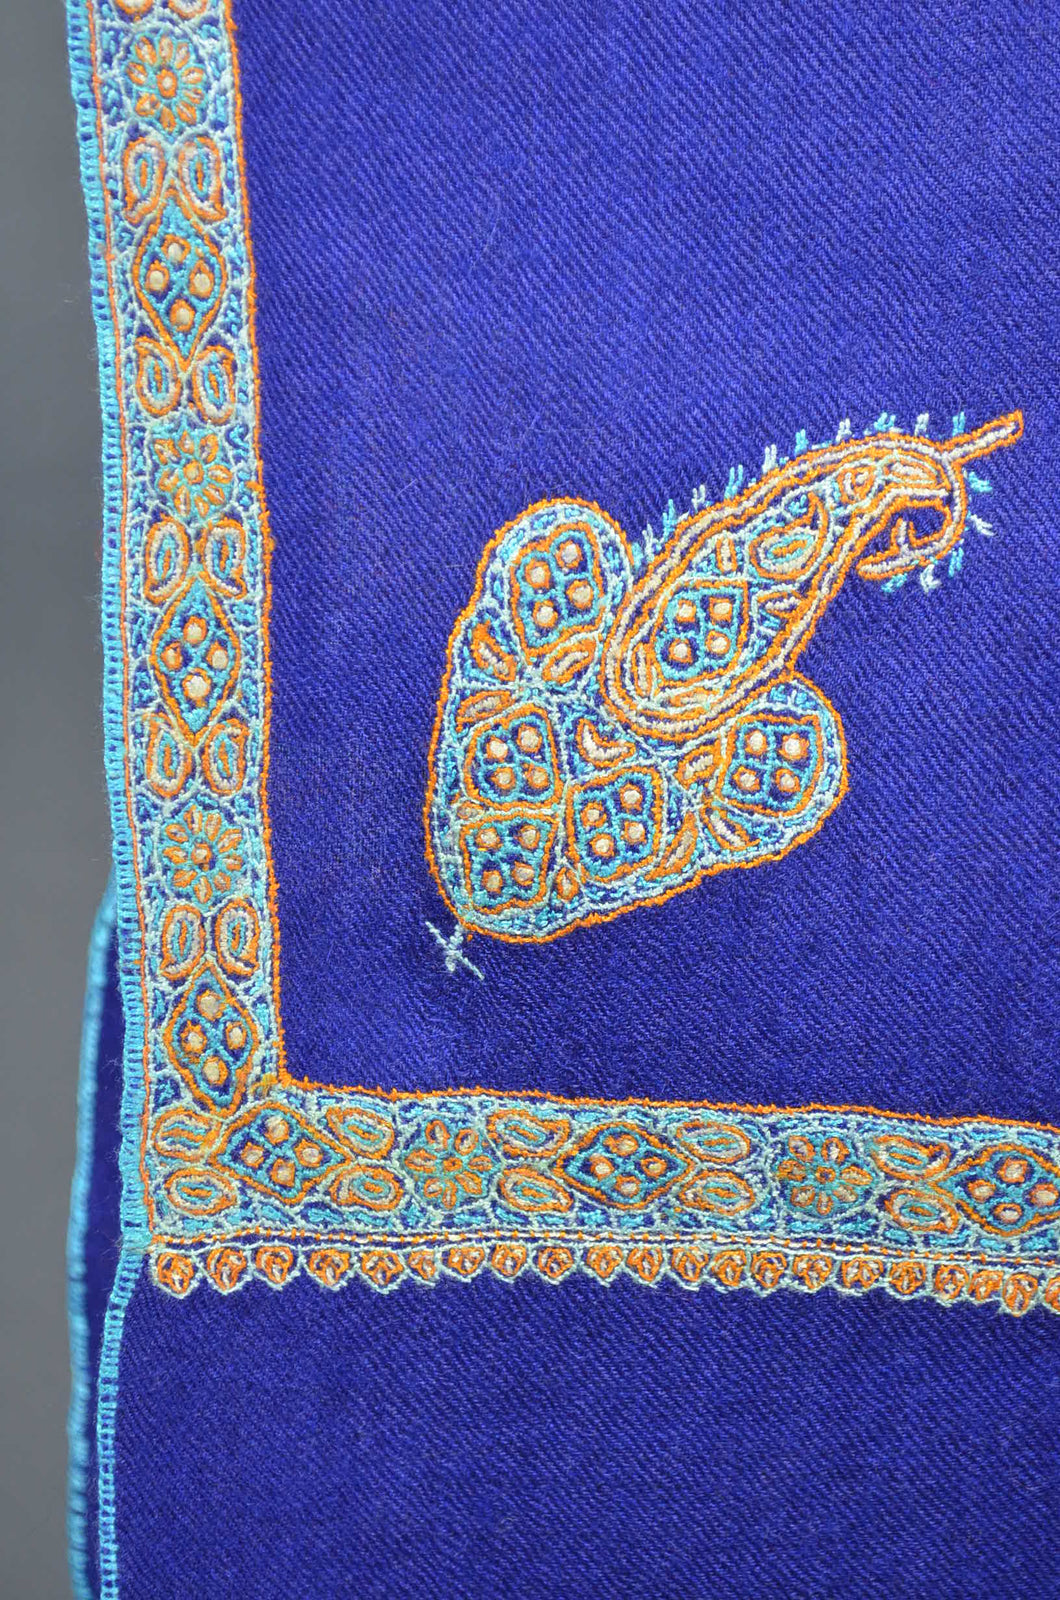 Blue Base Border Embroidery Cashmere Pashmina Shawl